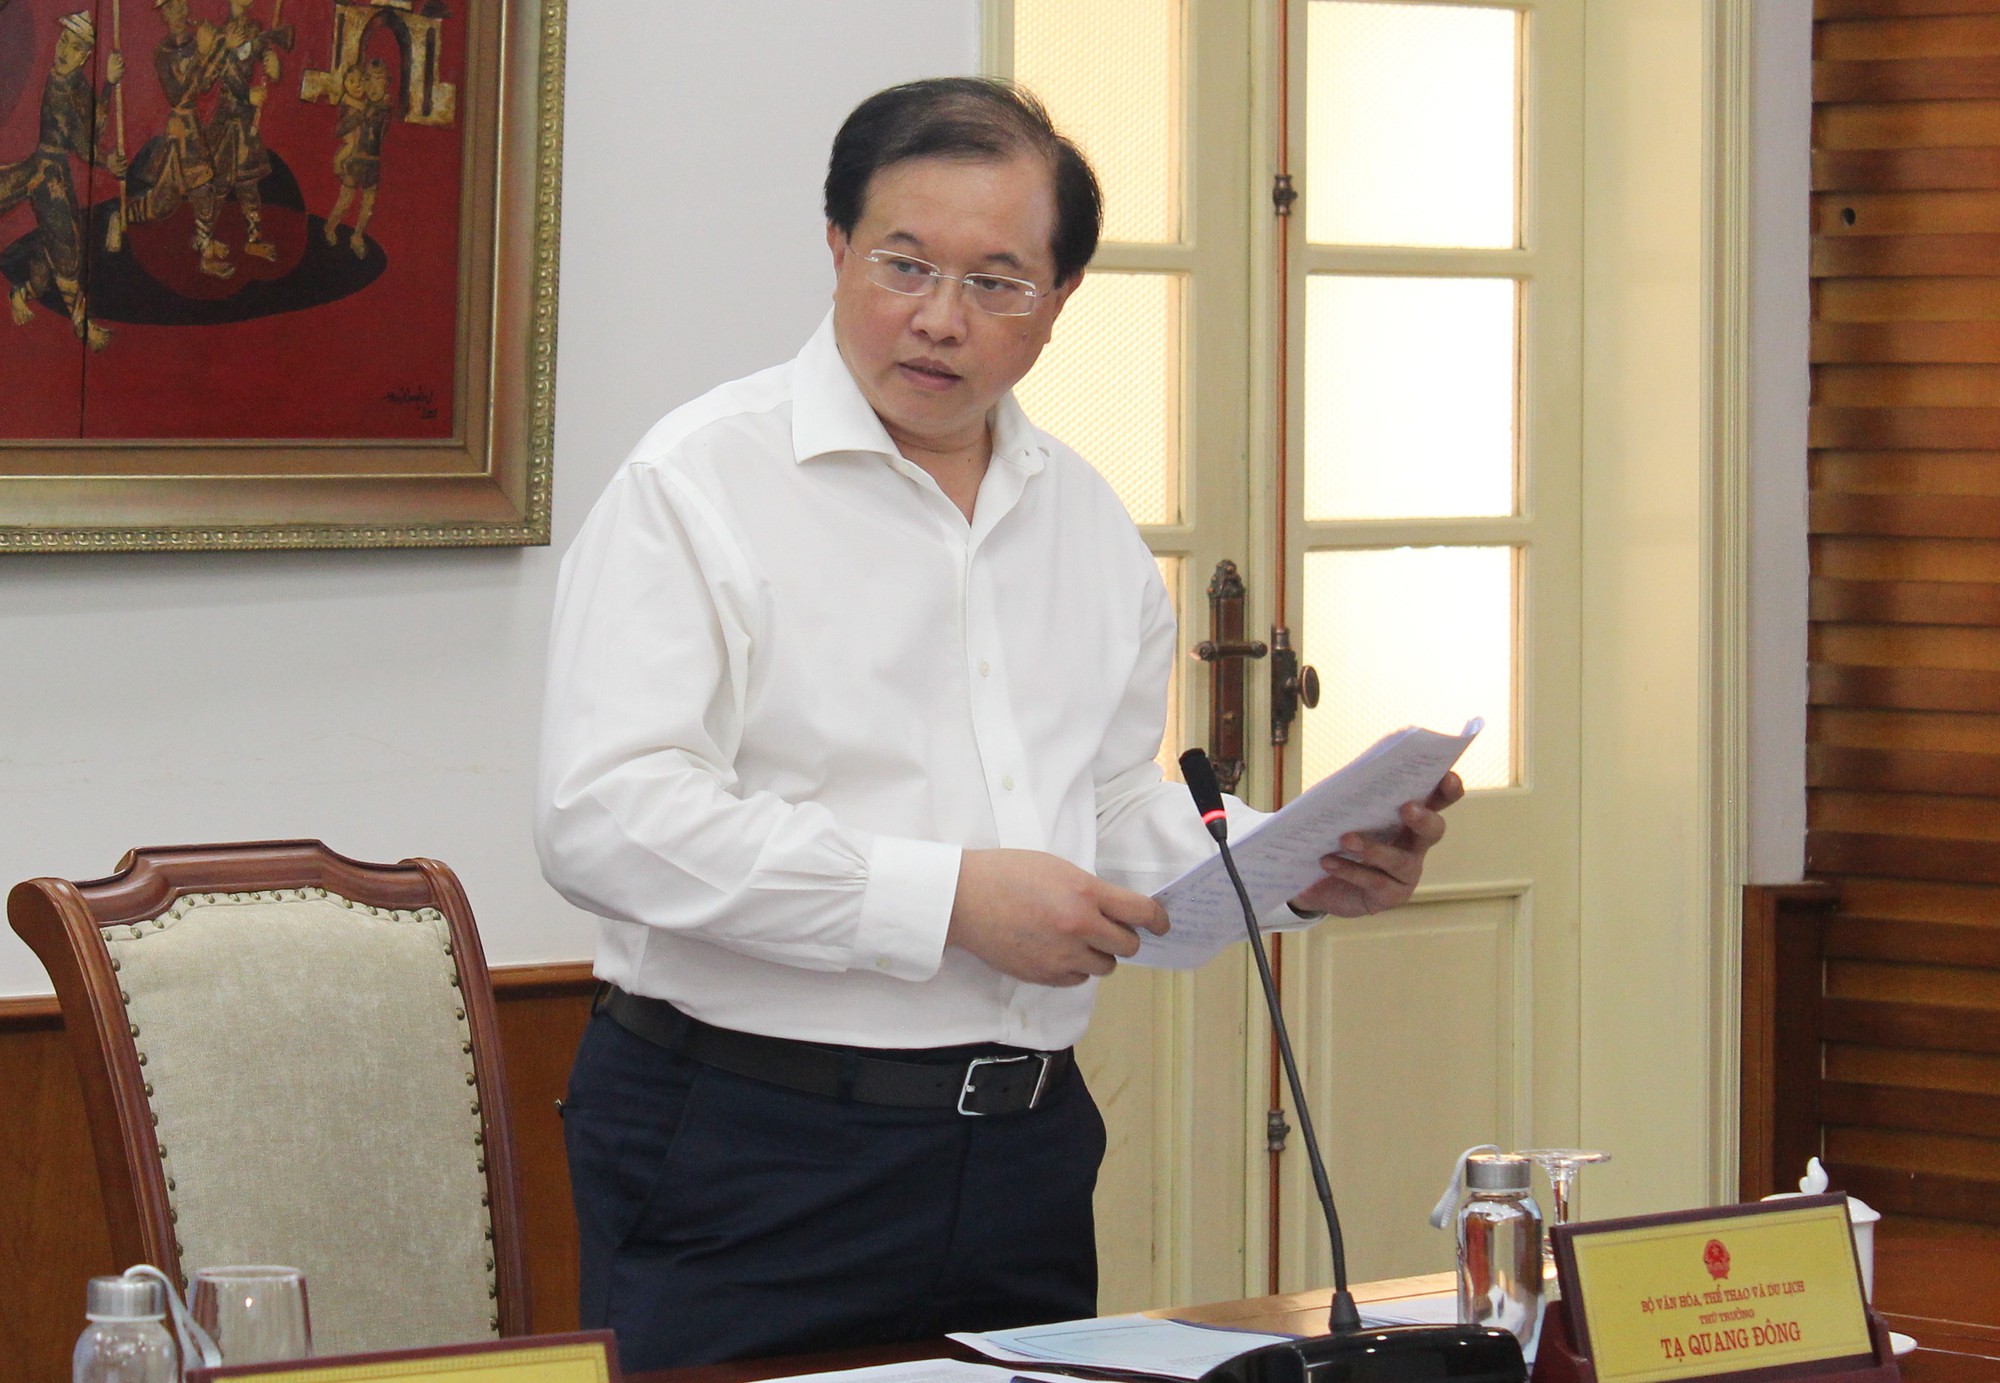 Bộ trưởng Nguyễn Văn Hùng: Chọn khâu đột phá, làm một cách căn cơ, bài bản để tạo ra &quot;cú hích&quot; trong cải cách hành chính - Ảnh 2.